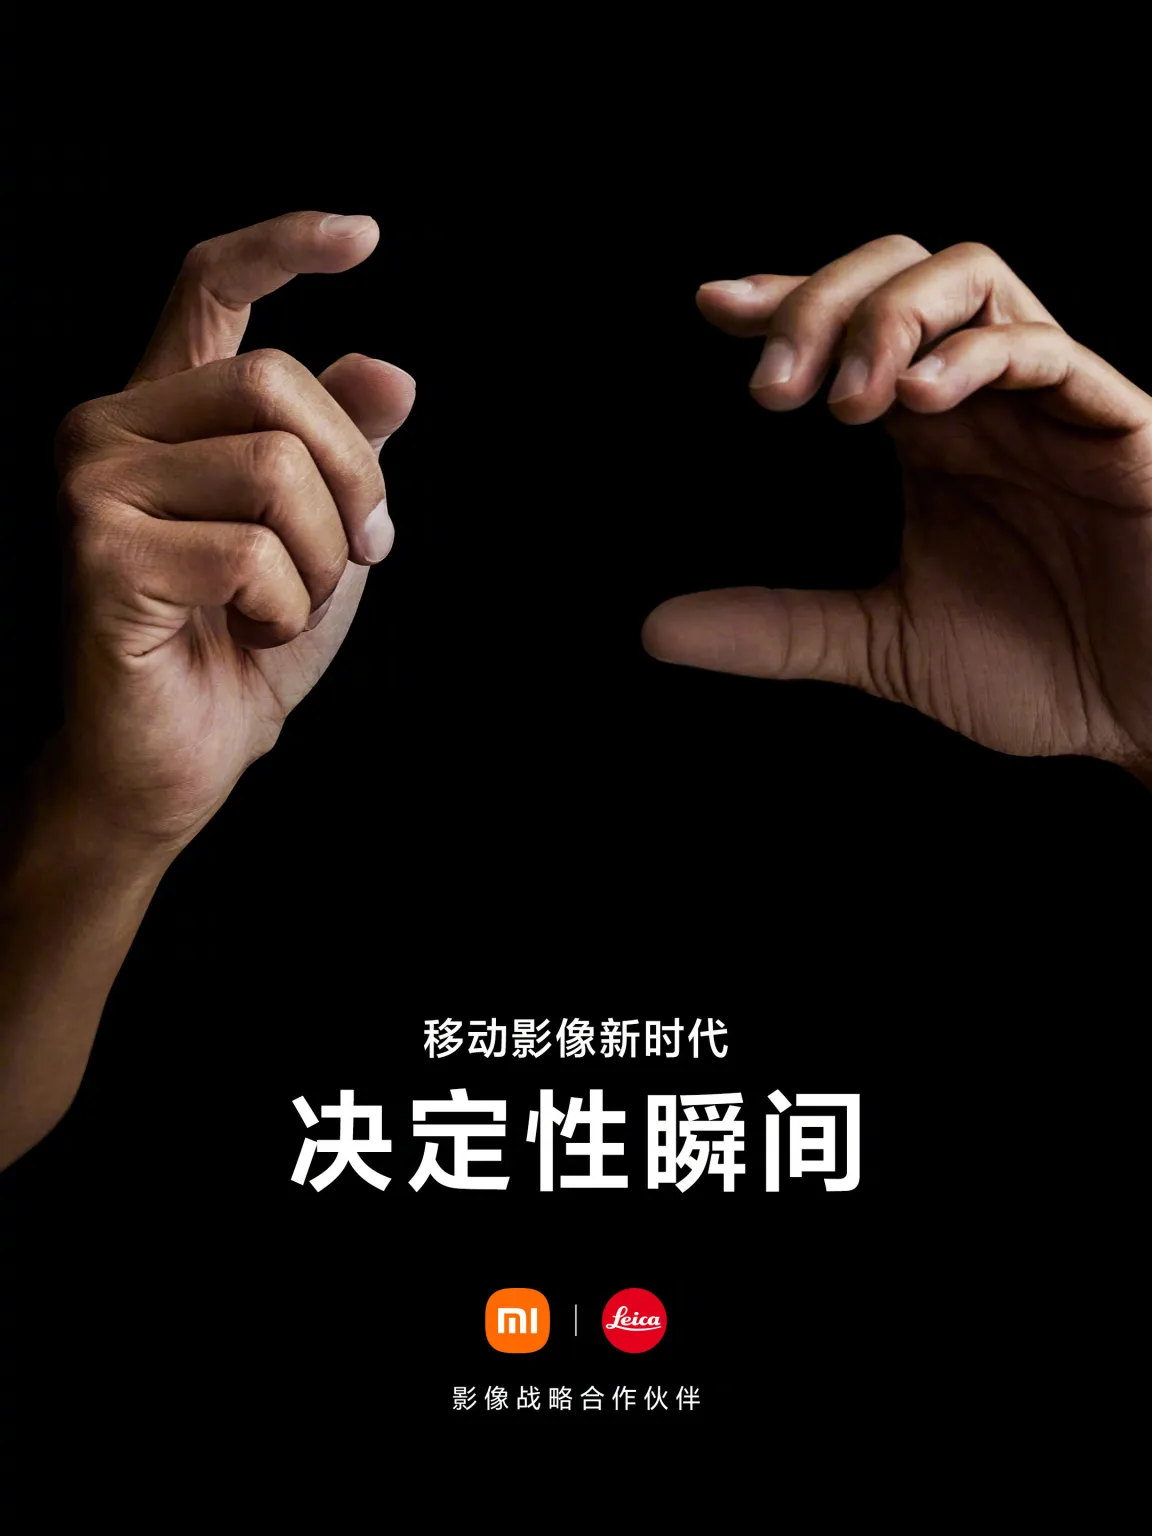 Официально: Xiaomi и Leica откроют новую эру мобильной фотографии – фото 1